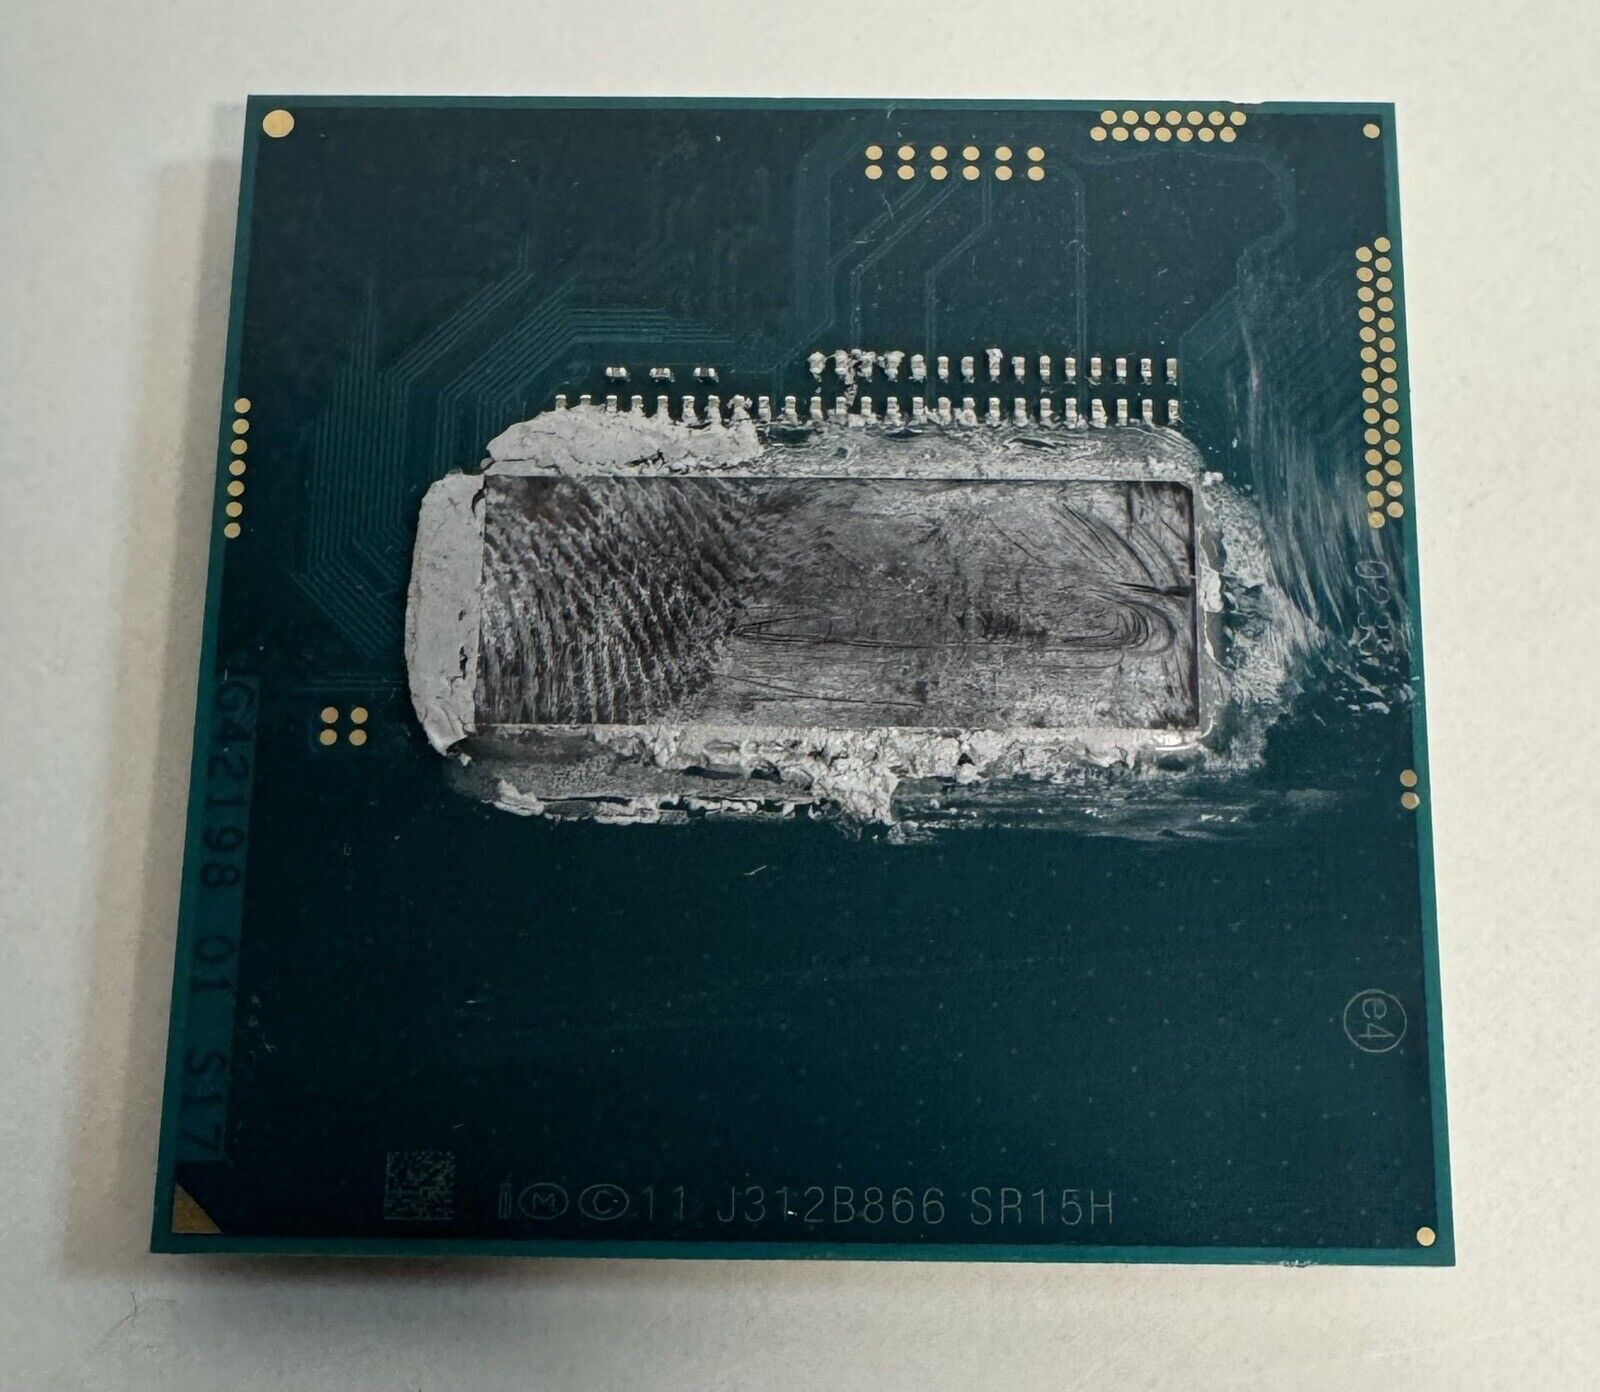 Intel Core i7-4700MQ 2.4GHz to 3.4G 6MB Quad-Core Socket G3 CPU SR15H